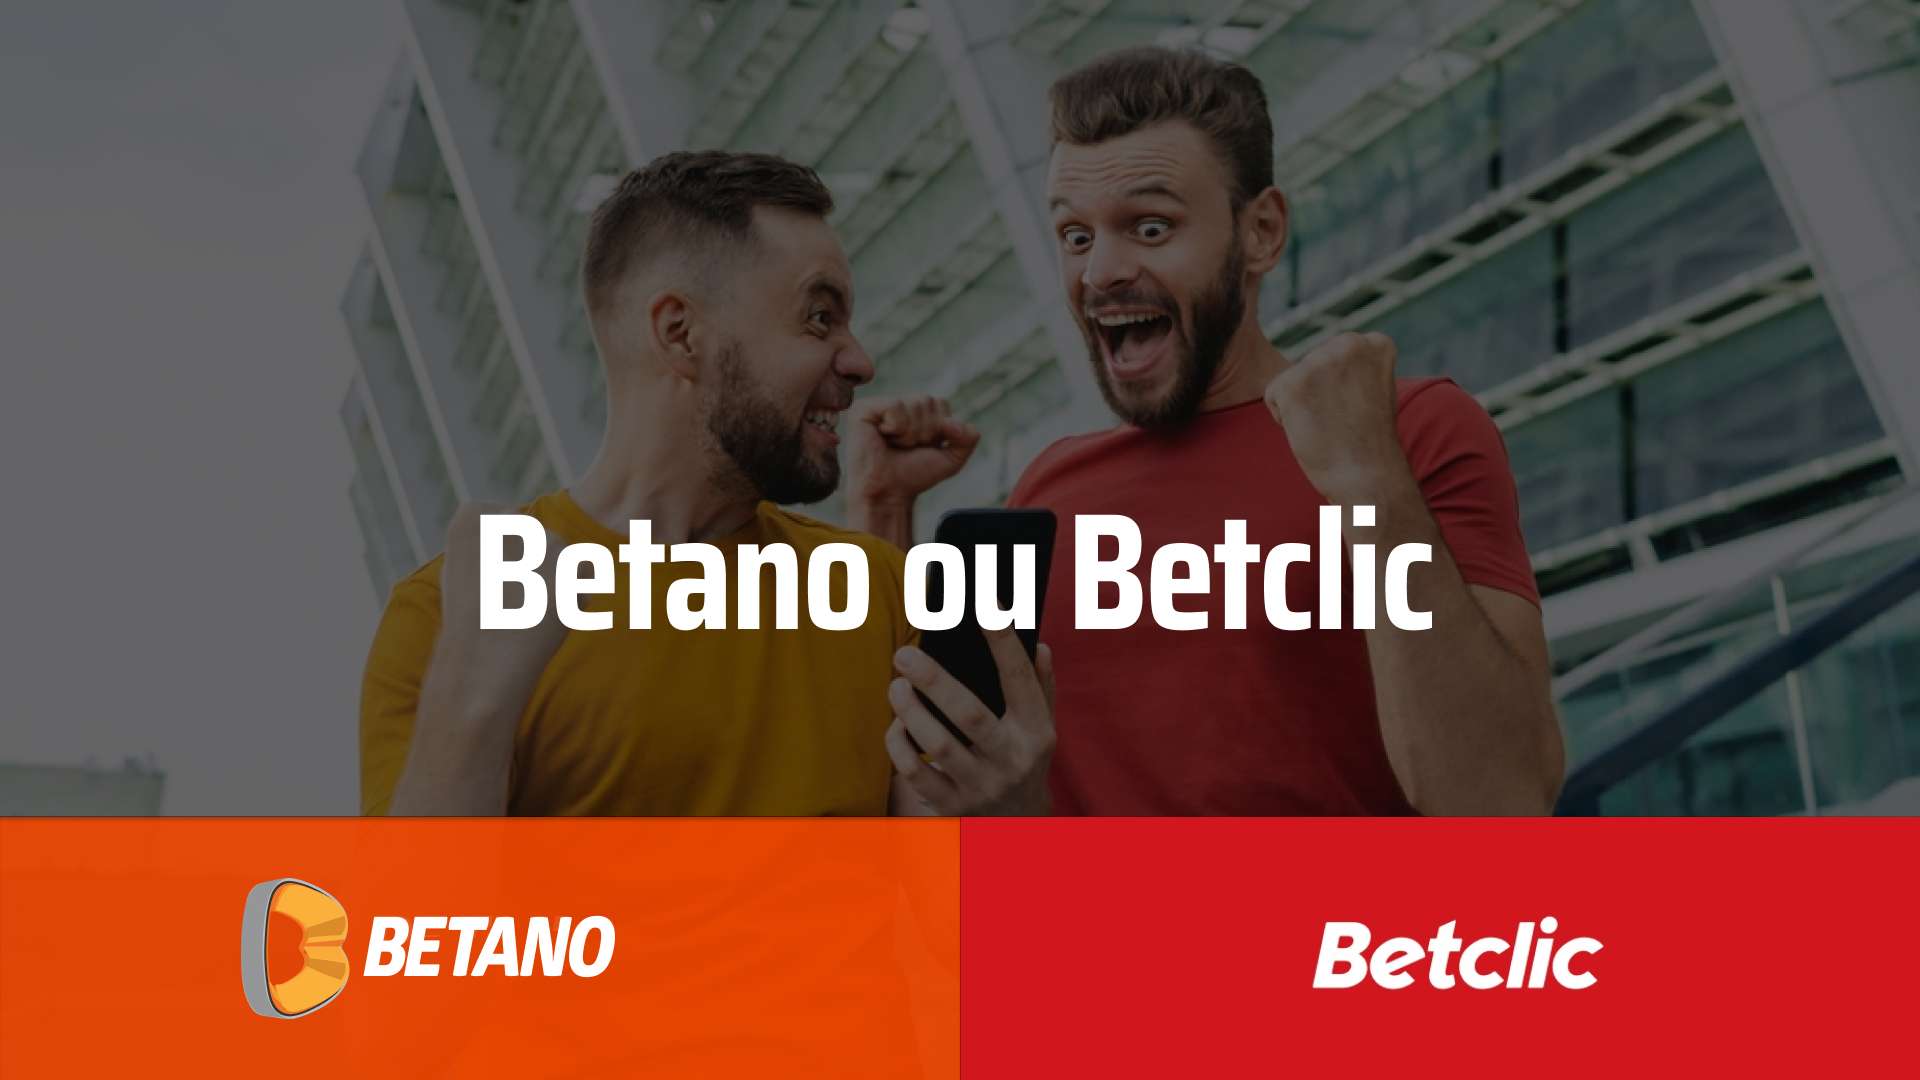 betano ou betclic - Betano ou Betclic Comparação: Qual a Melhor em [BONUS operateur="Year"/]?